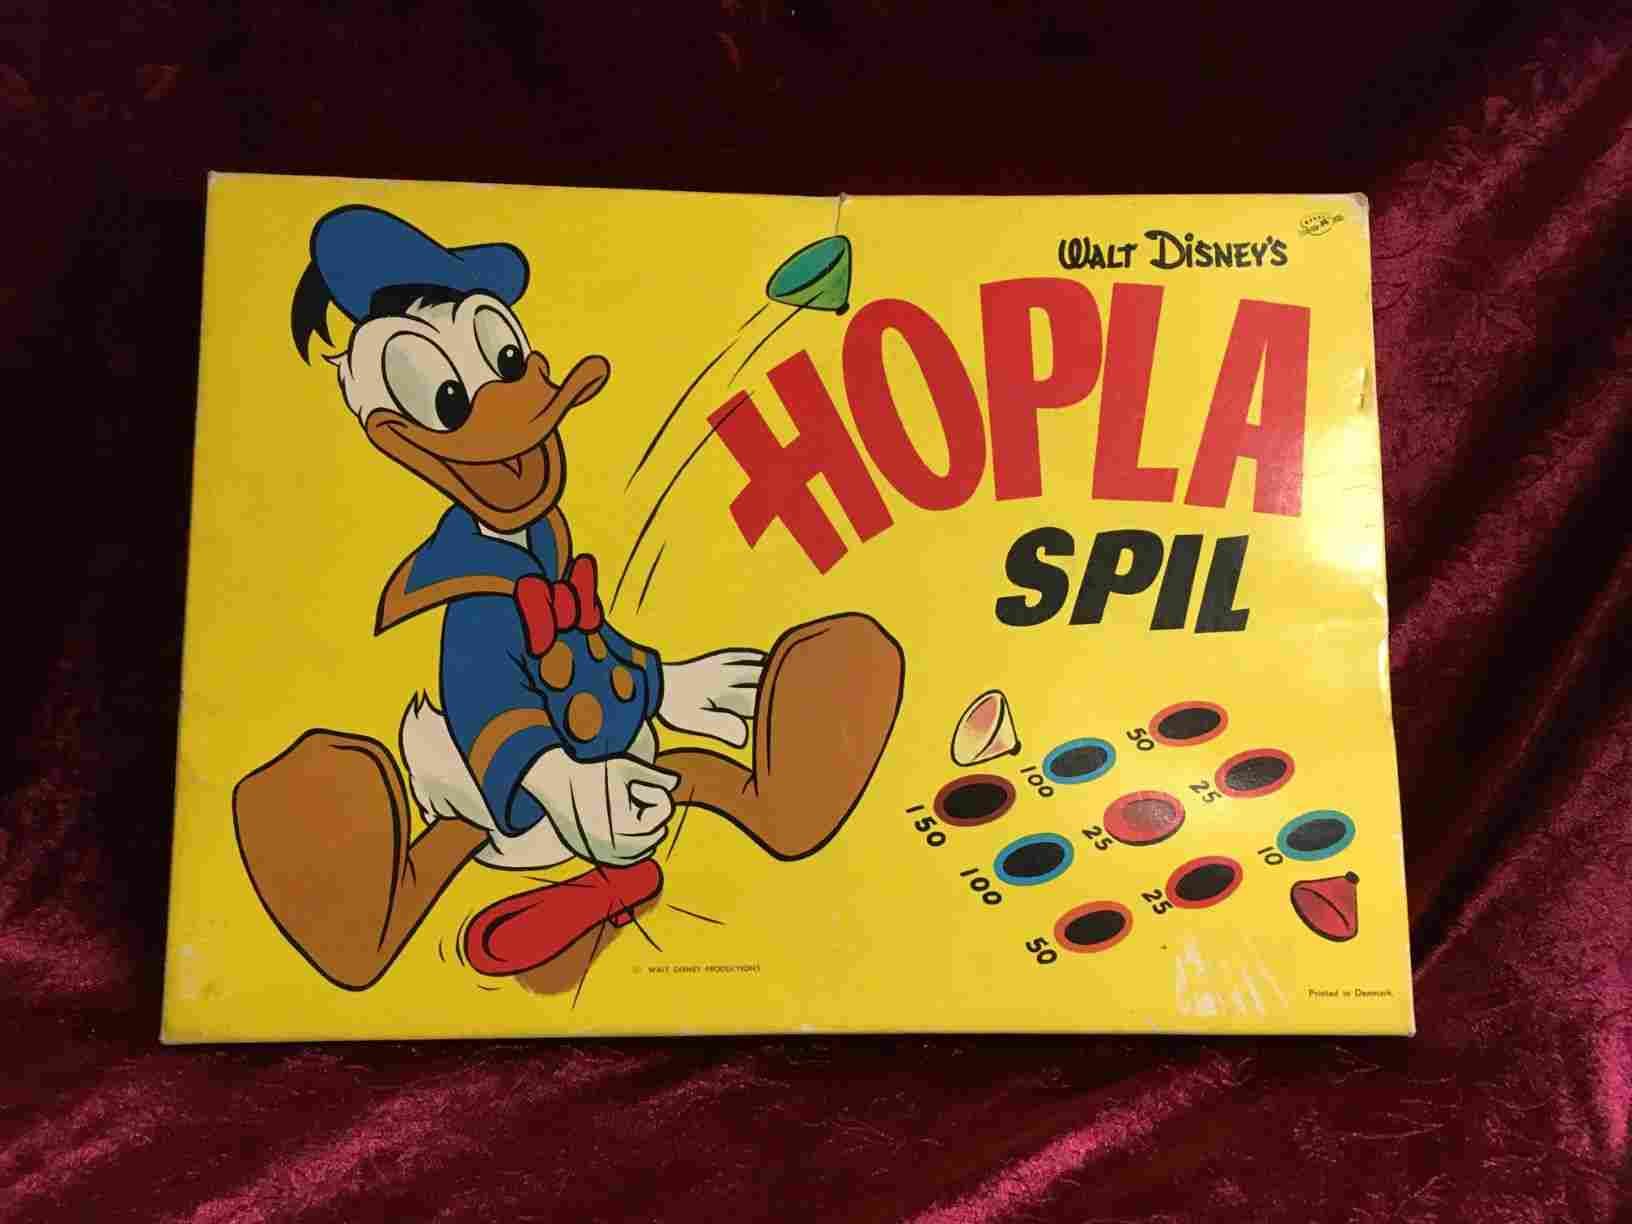 Hopla - Originalt Disney spil der er sjovt for både børn og voksne, det gælder om at få en top til at hoppe i hul, hvor den giver flest point. Let at lære, selv for yngre børn. Flot original stand. Solgt